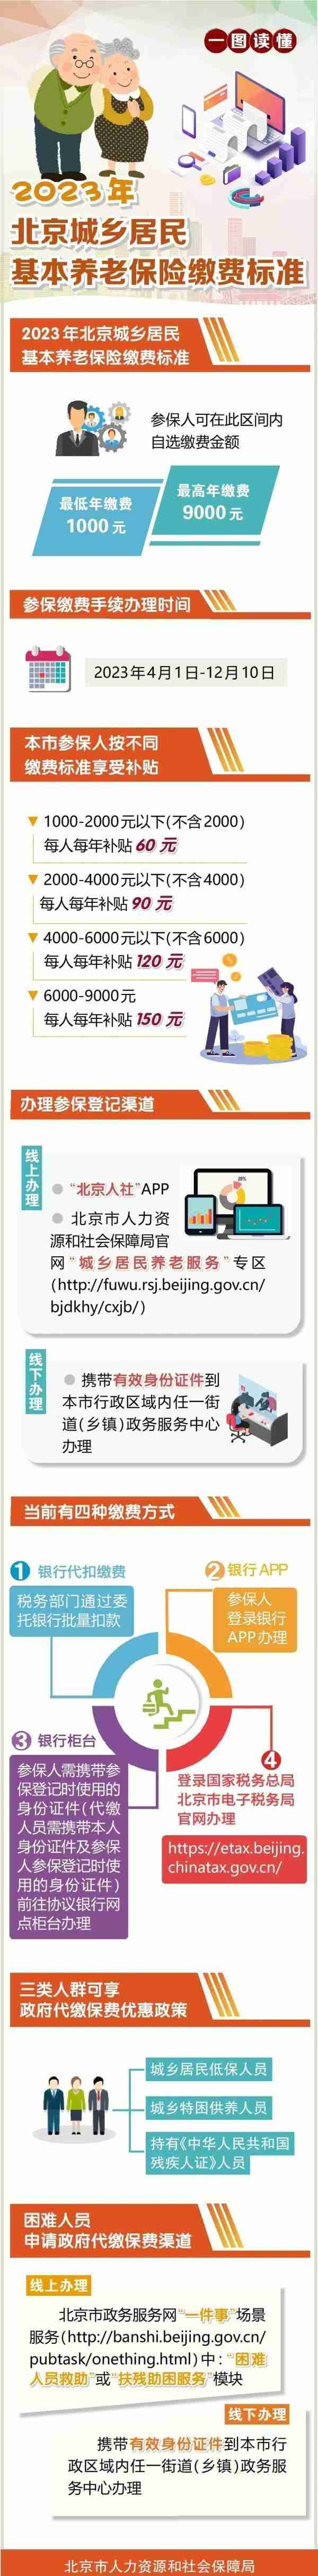 北京今年城乡居民基本养老保险缴费标准发布